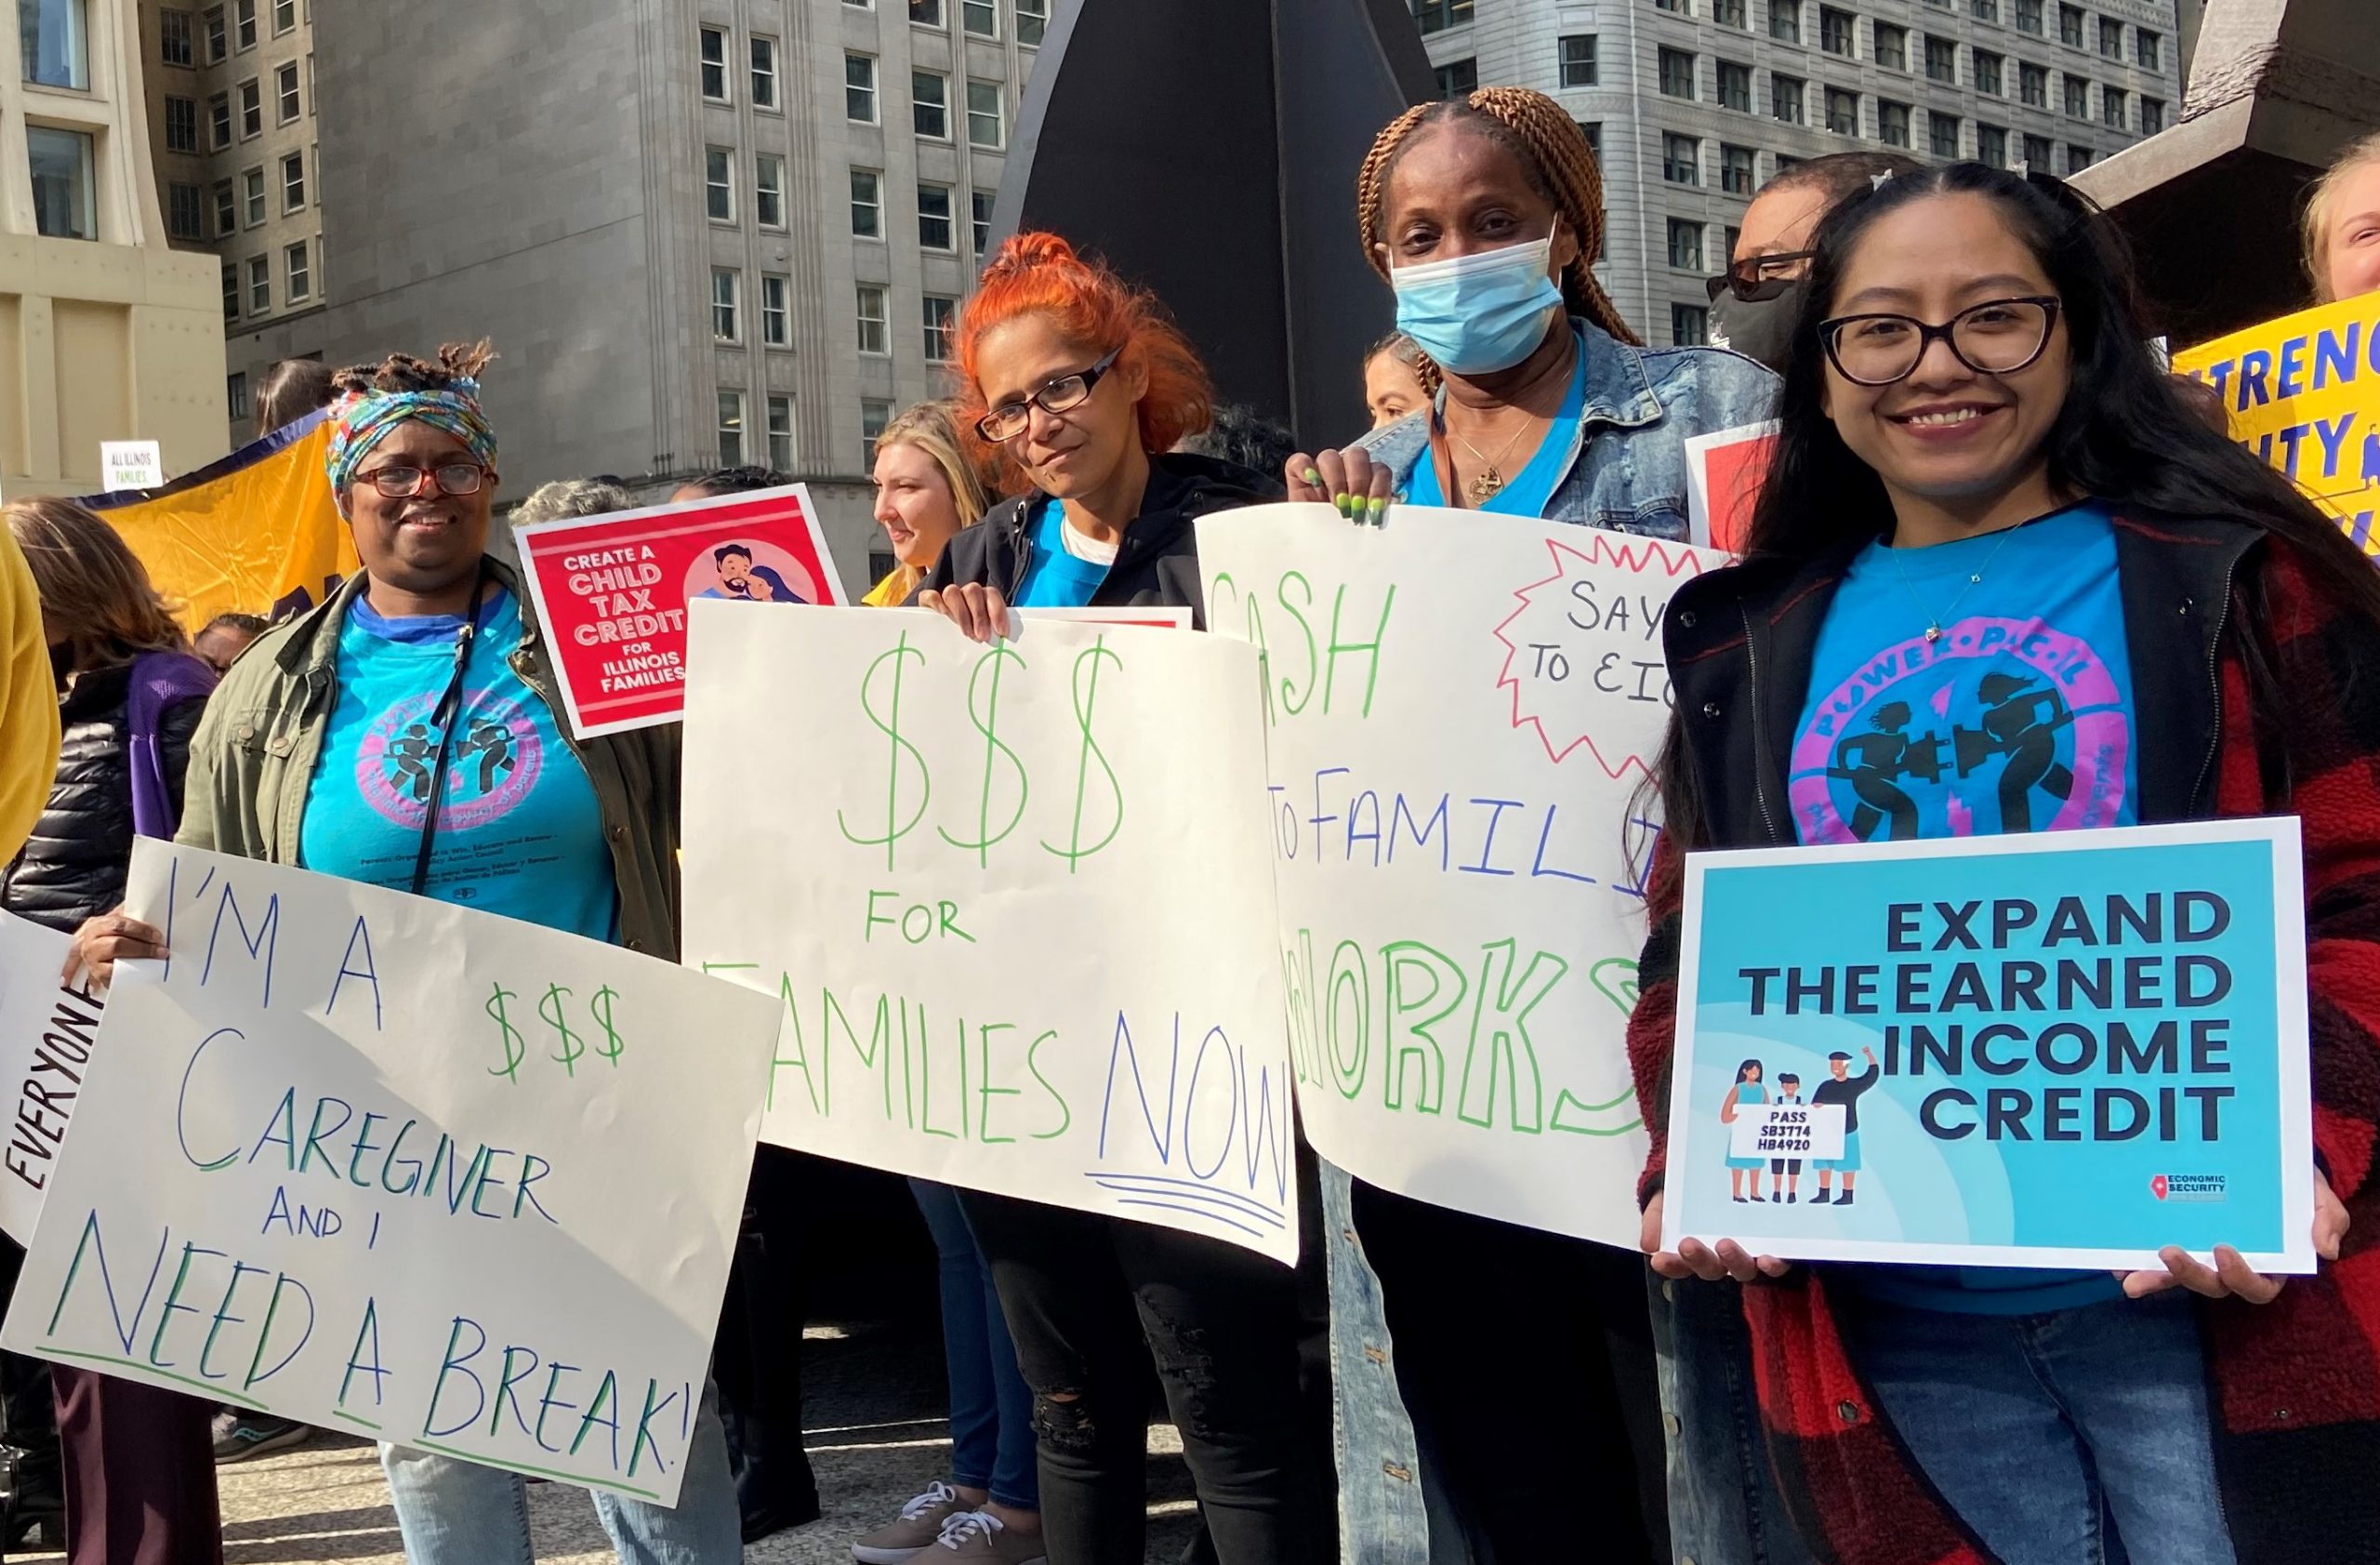 Cuatro mujeres en un mitin de desgravación fiscal sostienen carteles que abogan por la desgravación en efectivo para las familias